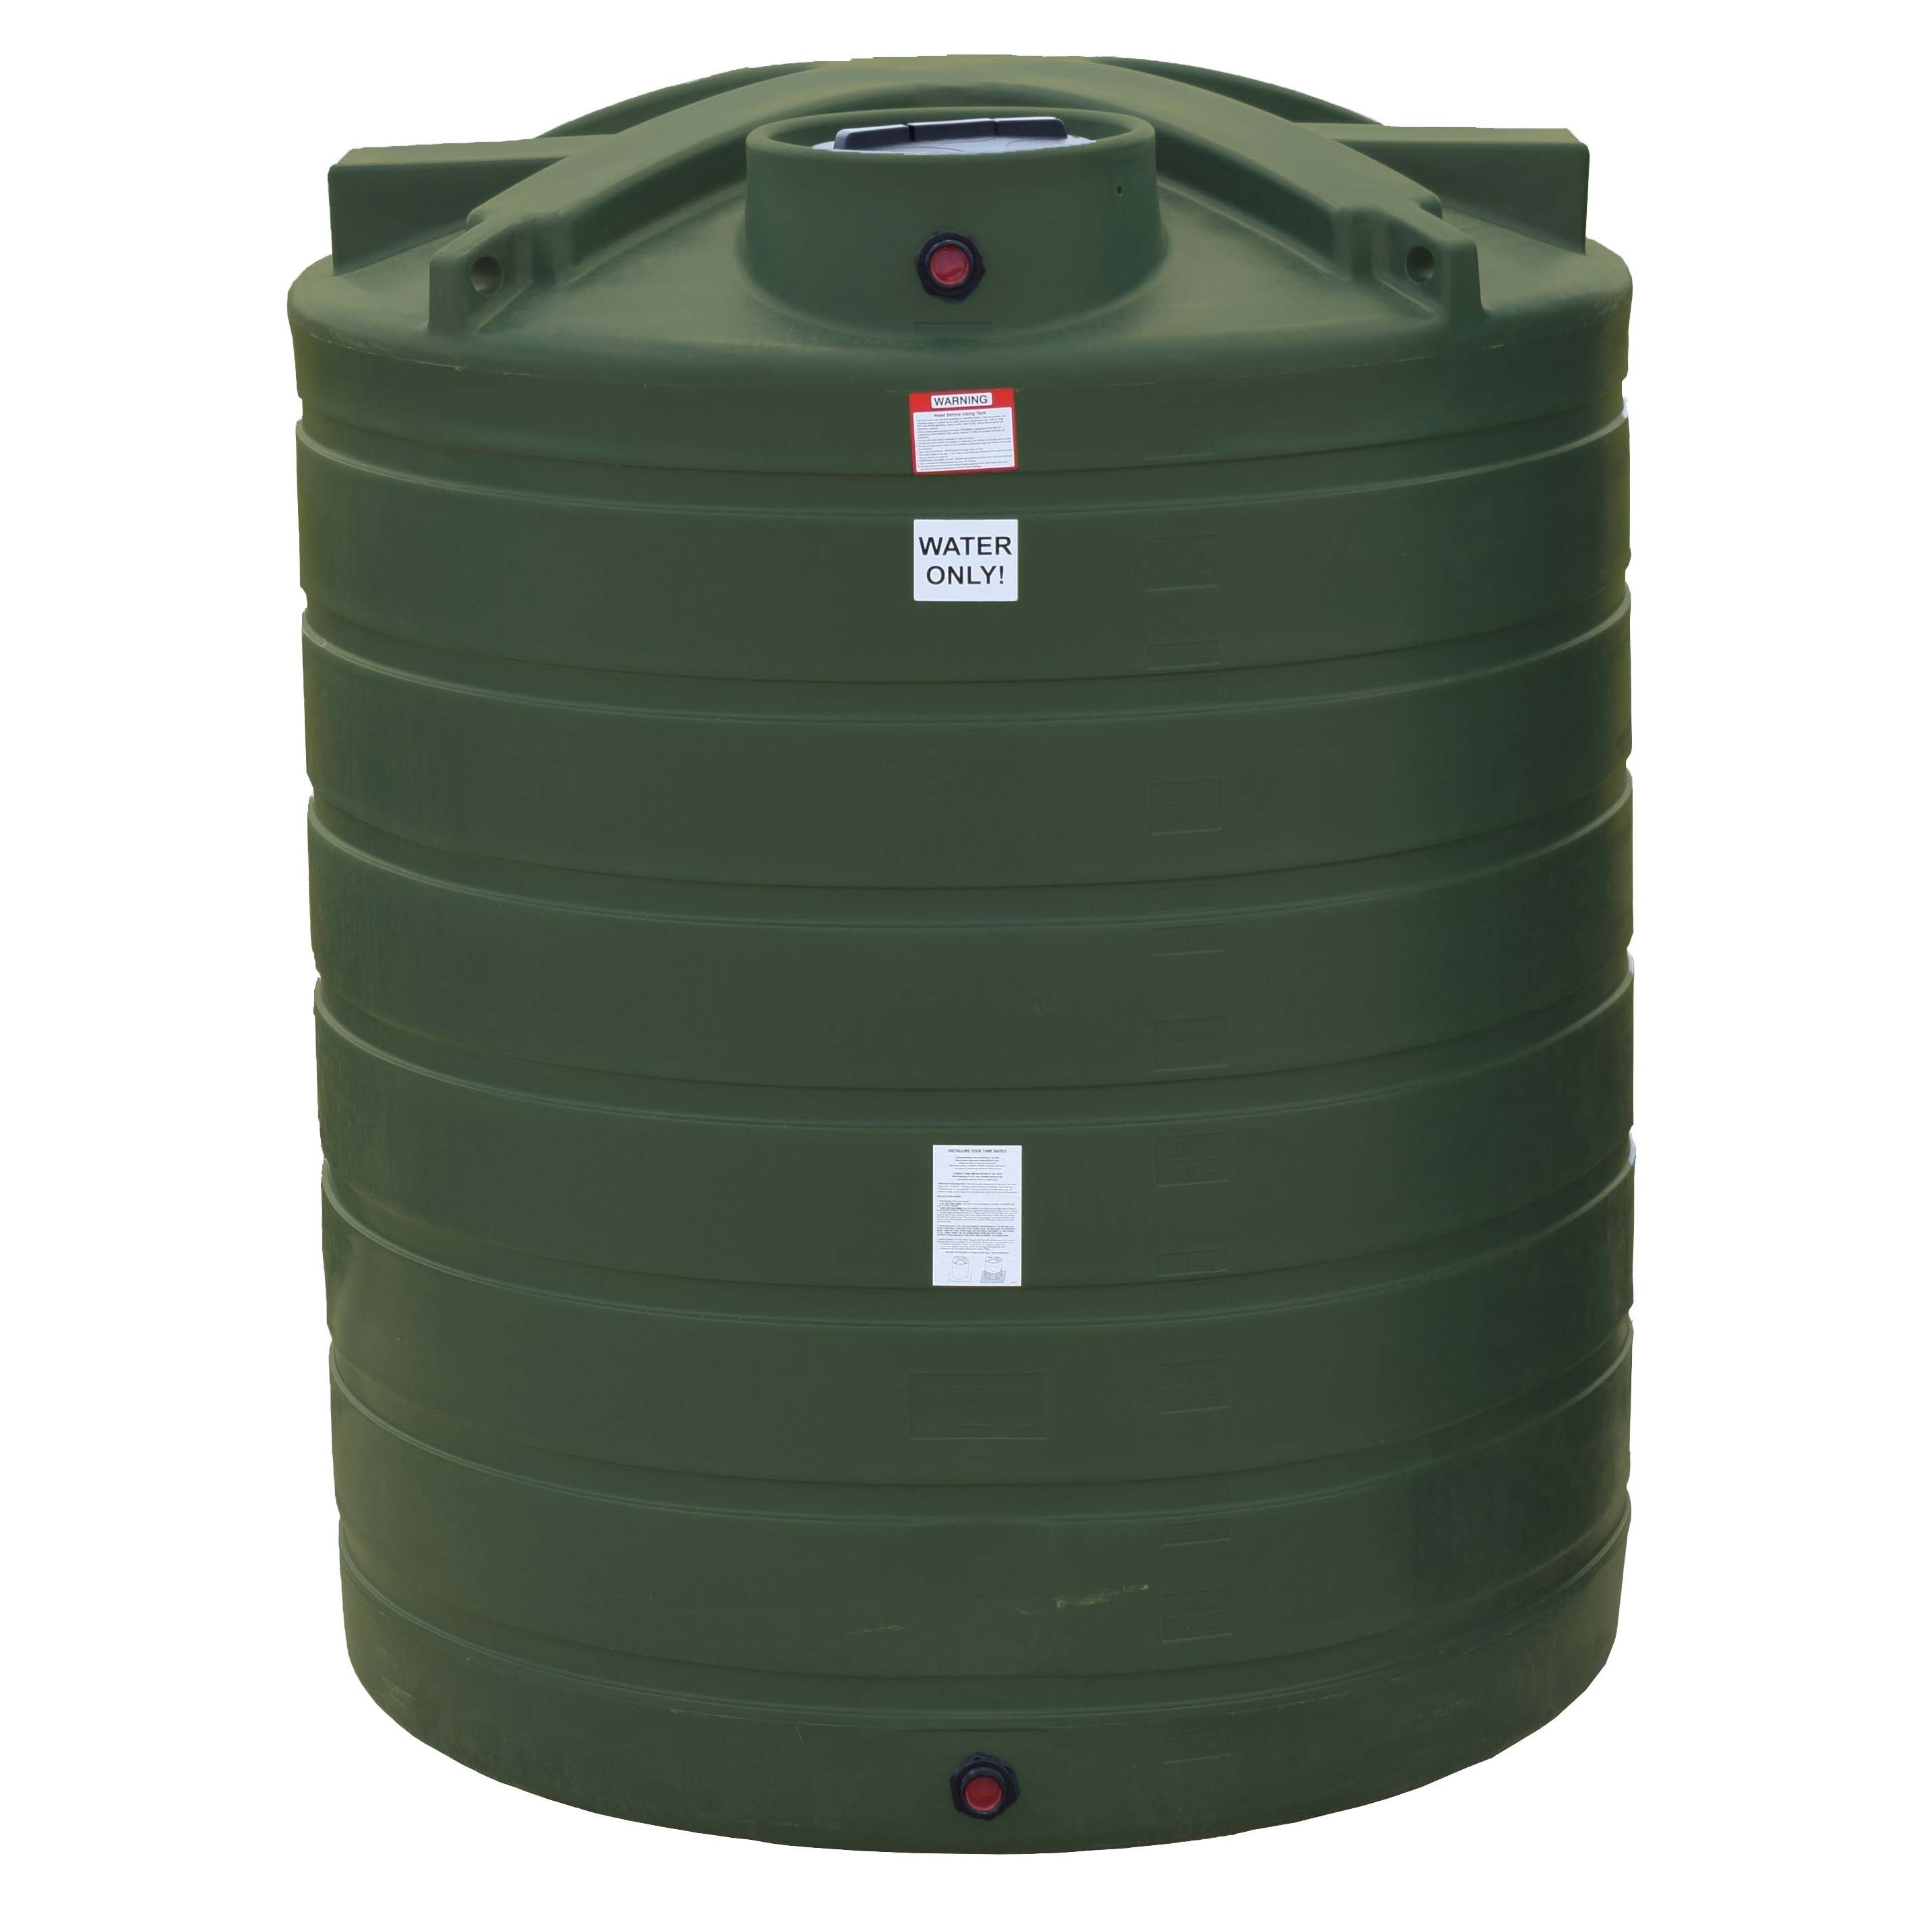 Best ideas about Vertical Water Storage Tank
. Save or Pin 2100 Gallon Vertical Water Storage Tank Now.